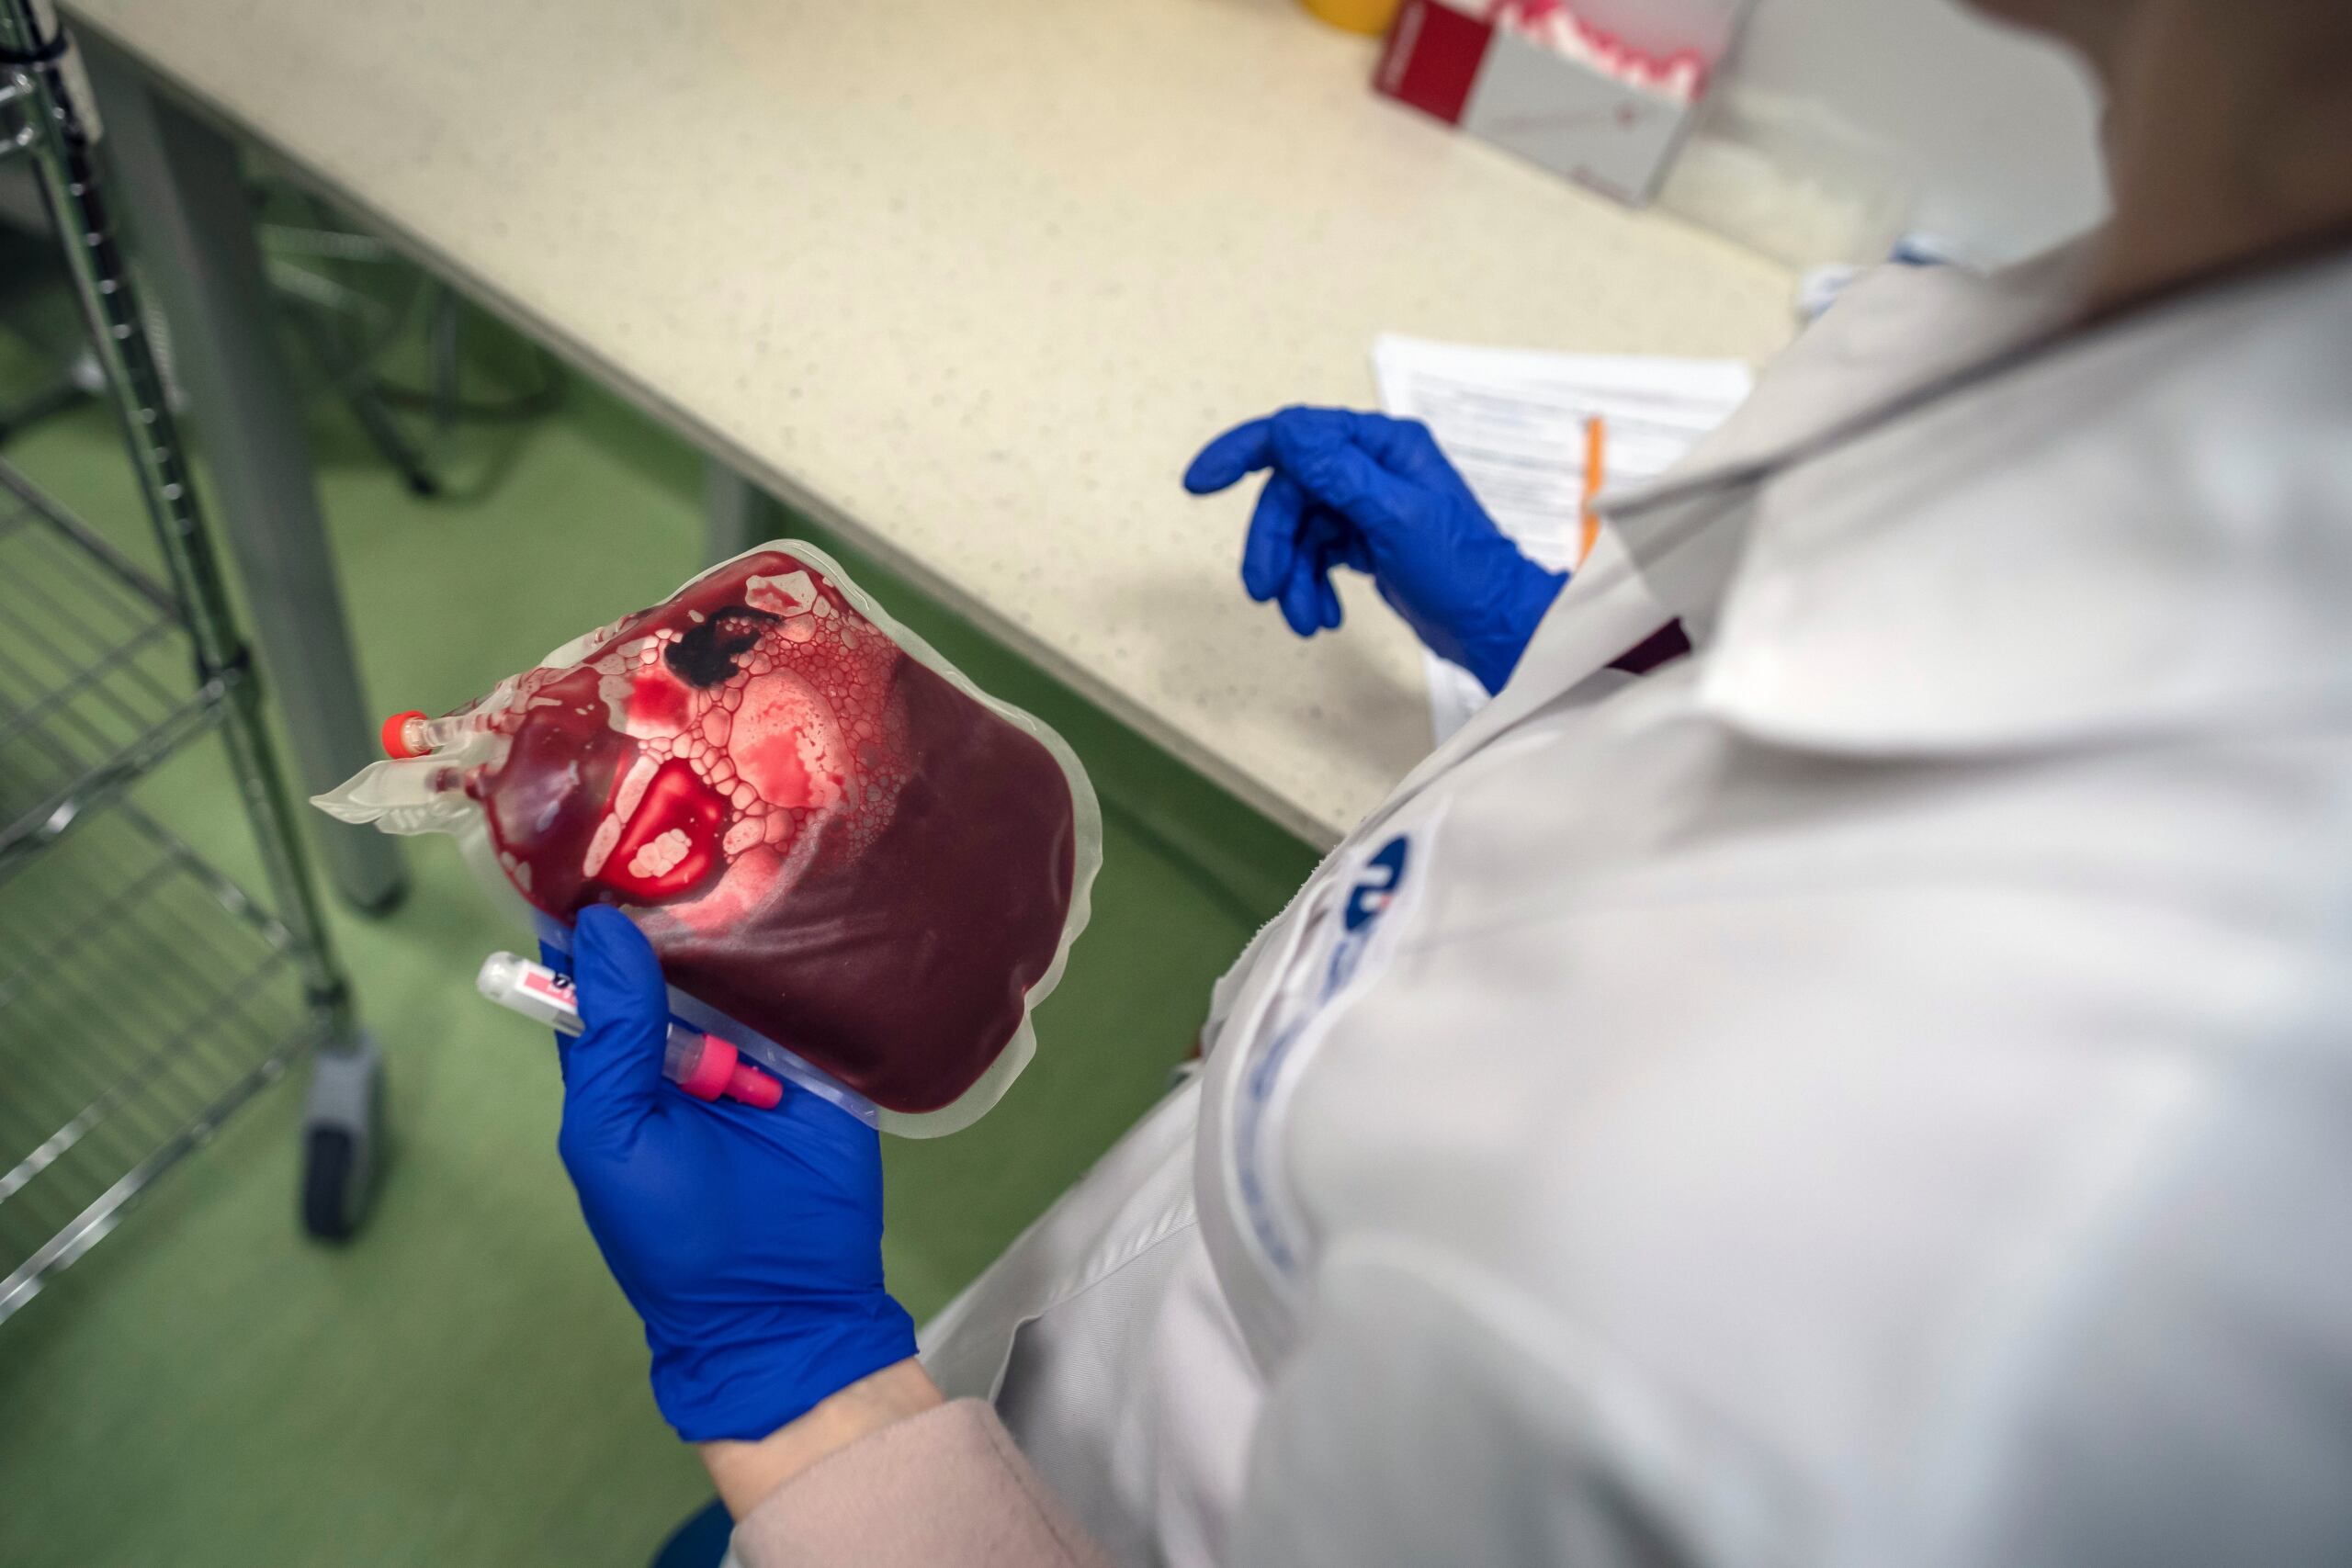 Pracownik laboratorium przygotowuje krew pępowinową i pępowinę, pobrane ze szpitali, do przechowywania w siedzibie Polskiego Banku Komórek Macierzystych